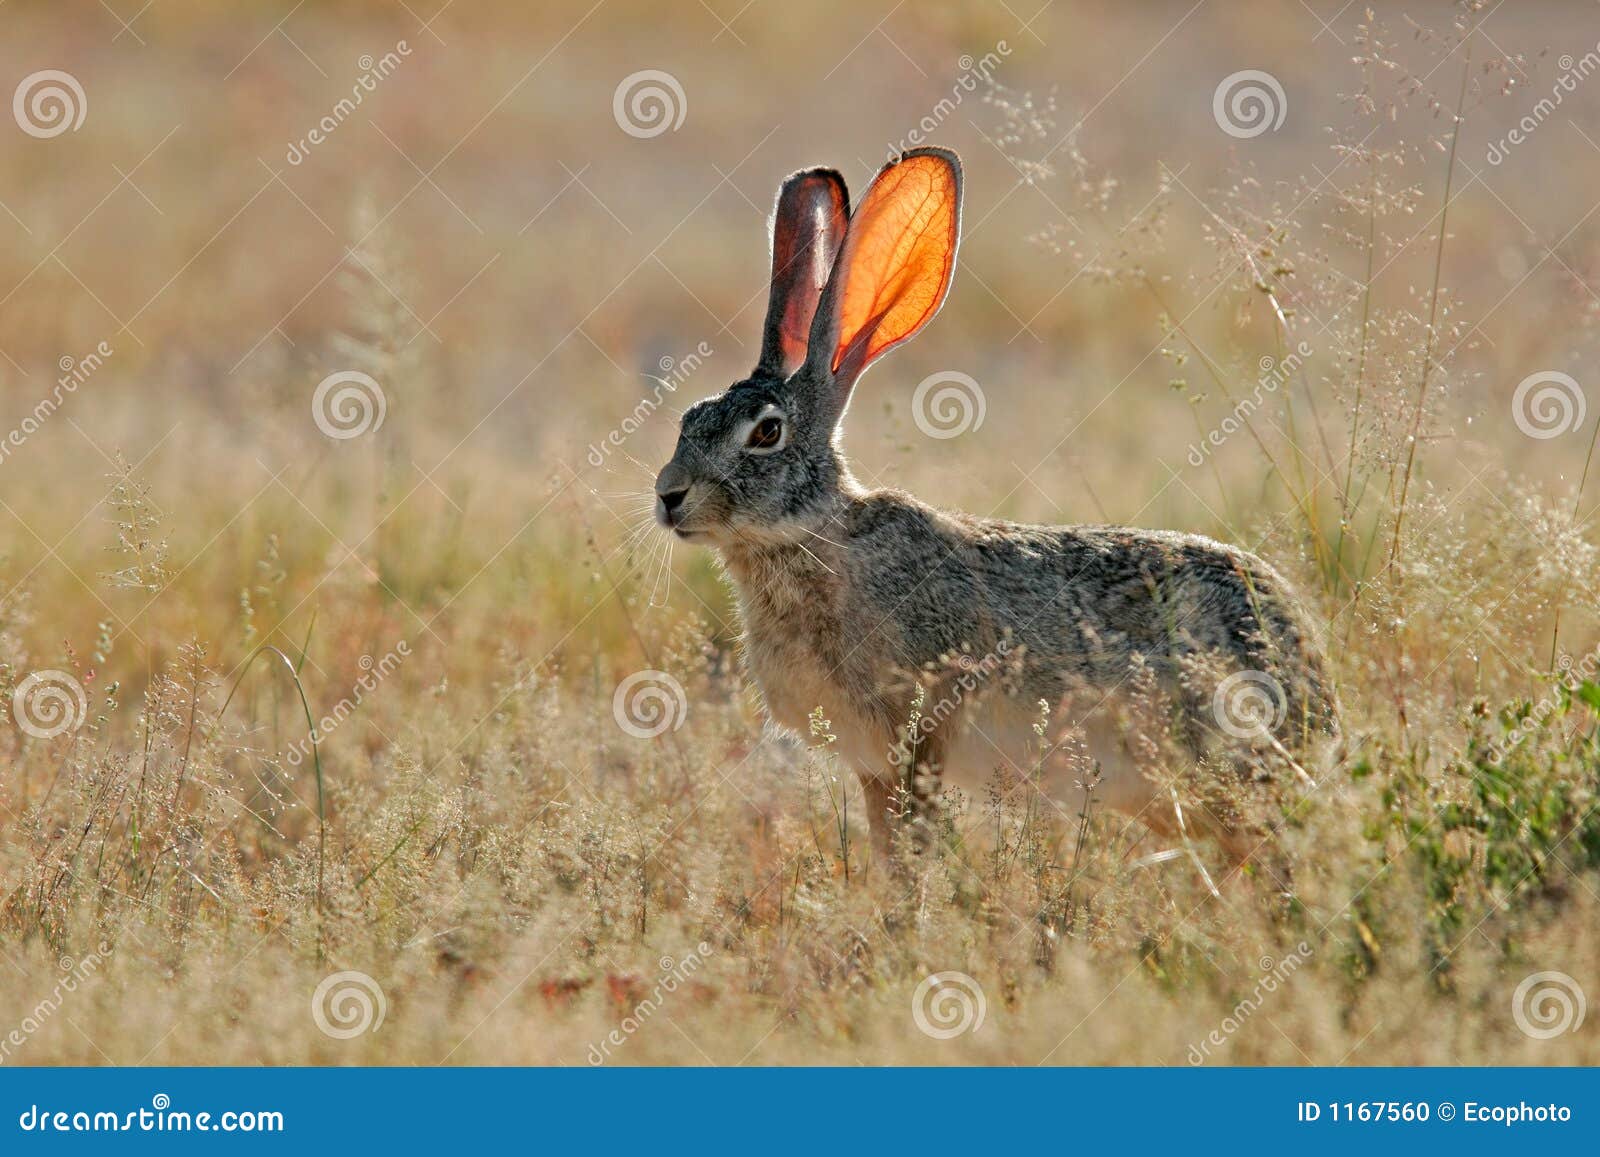 scrub hare, etosha national park, namibia